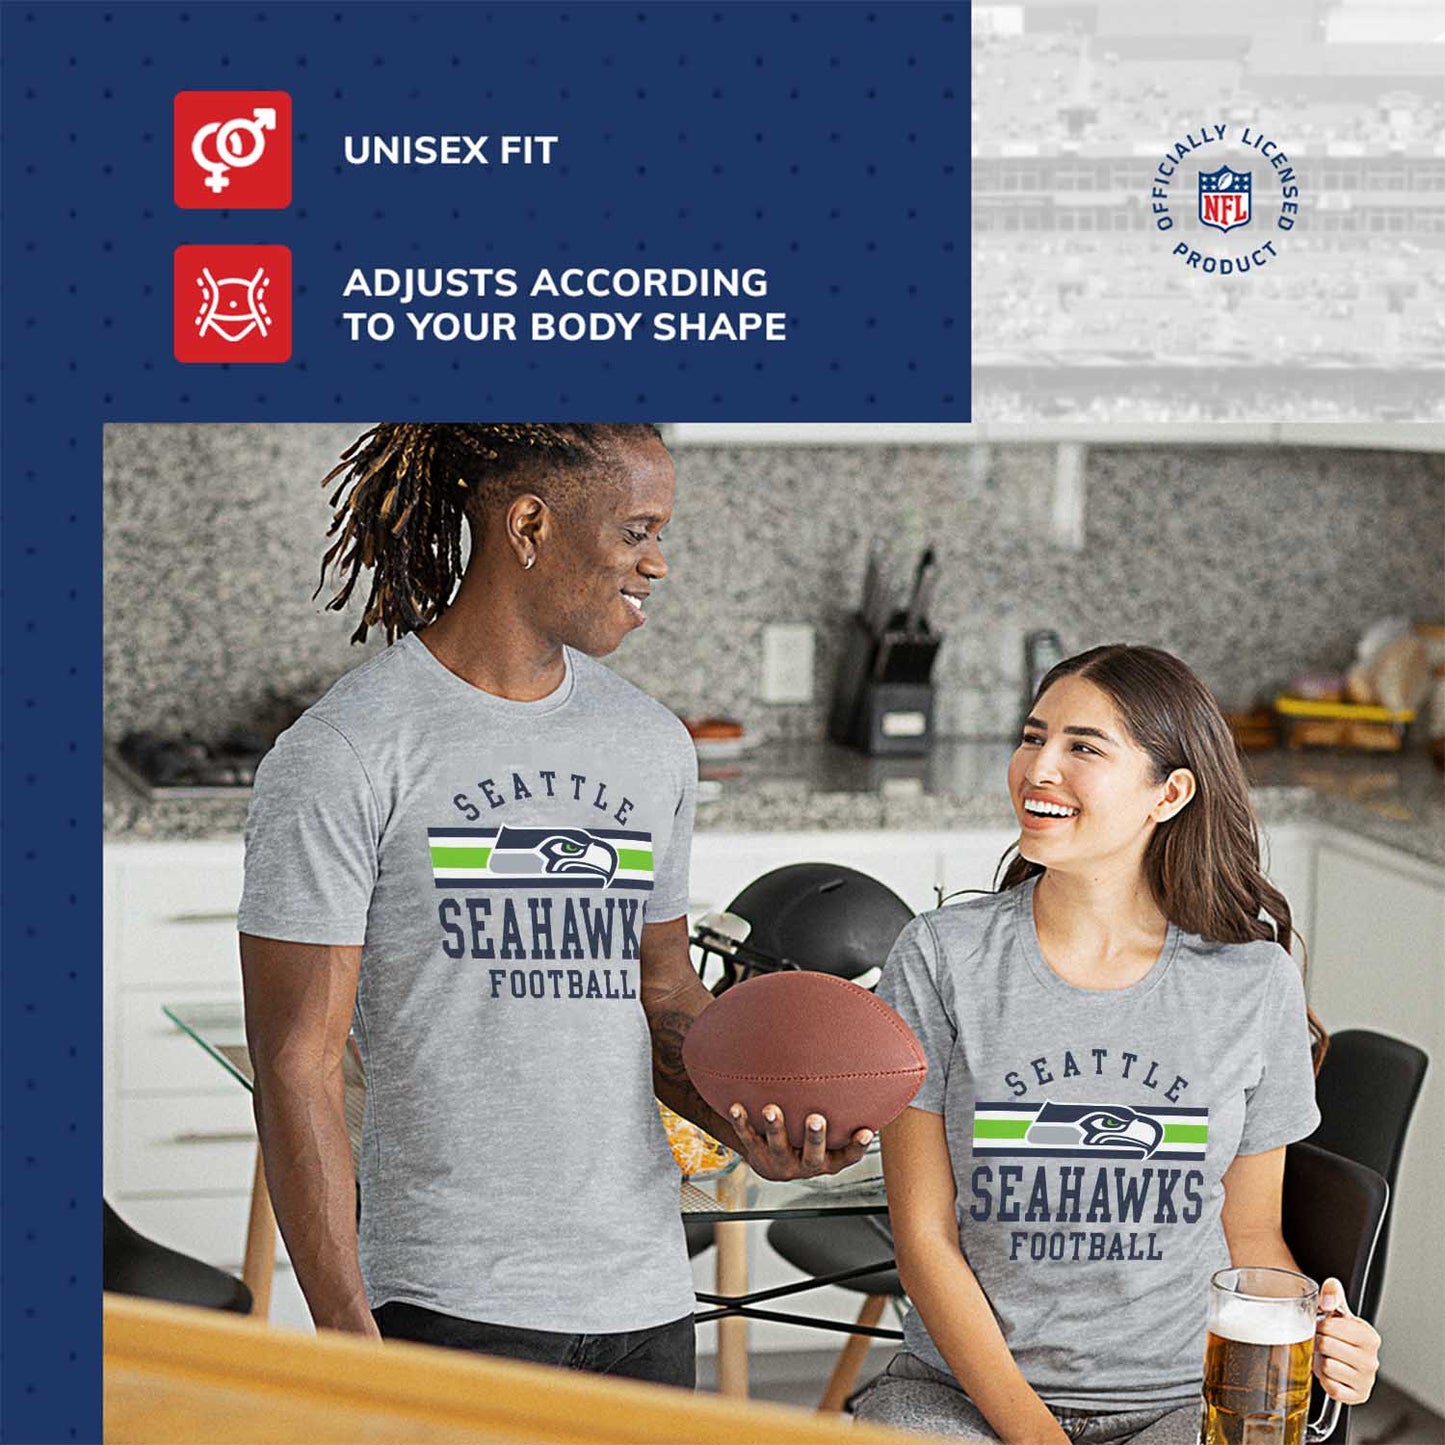 Seattle Seahawks NFL Adult Short Sleeve Team Stripe Tee - Sport Gray